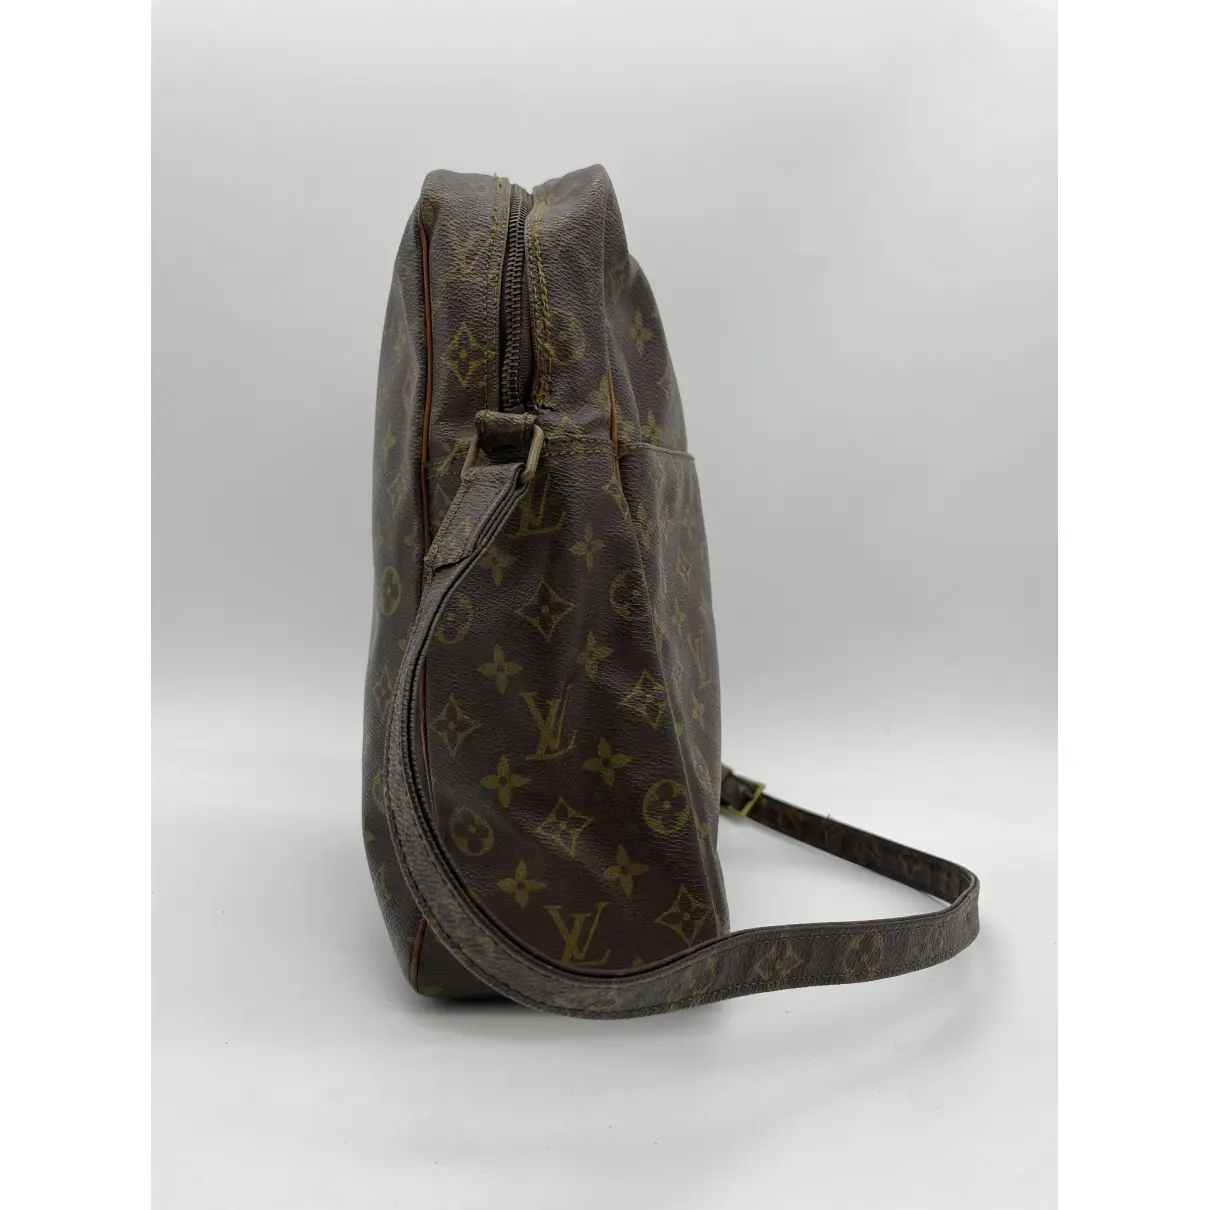 Marceau Messenger leather handbag Louis Vuitton